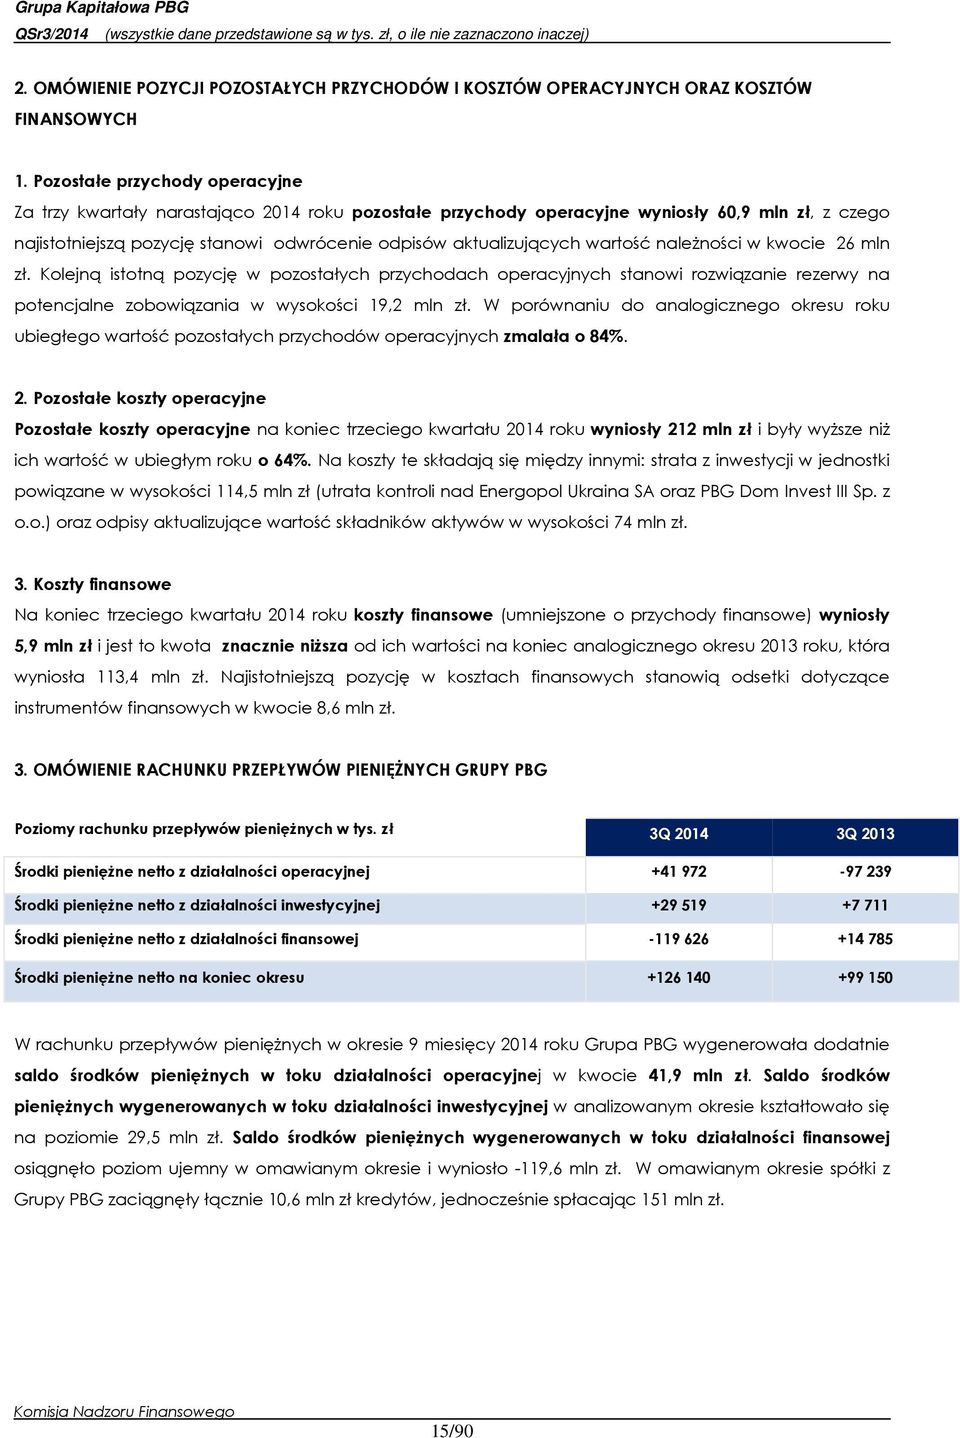 wartość należności w kwocie 26 mln zł. Kolejną istotną pozycję w pozostałych przychodach operacyjnych stanowi rozwiązanie rezerwy na potencjalne zobowiązania w wysokości 19,2 mln zł.